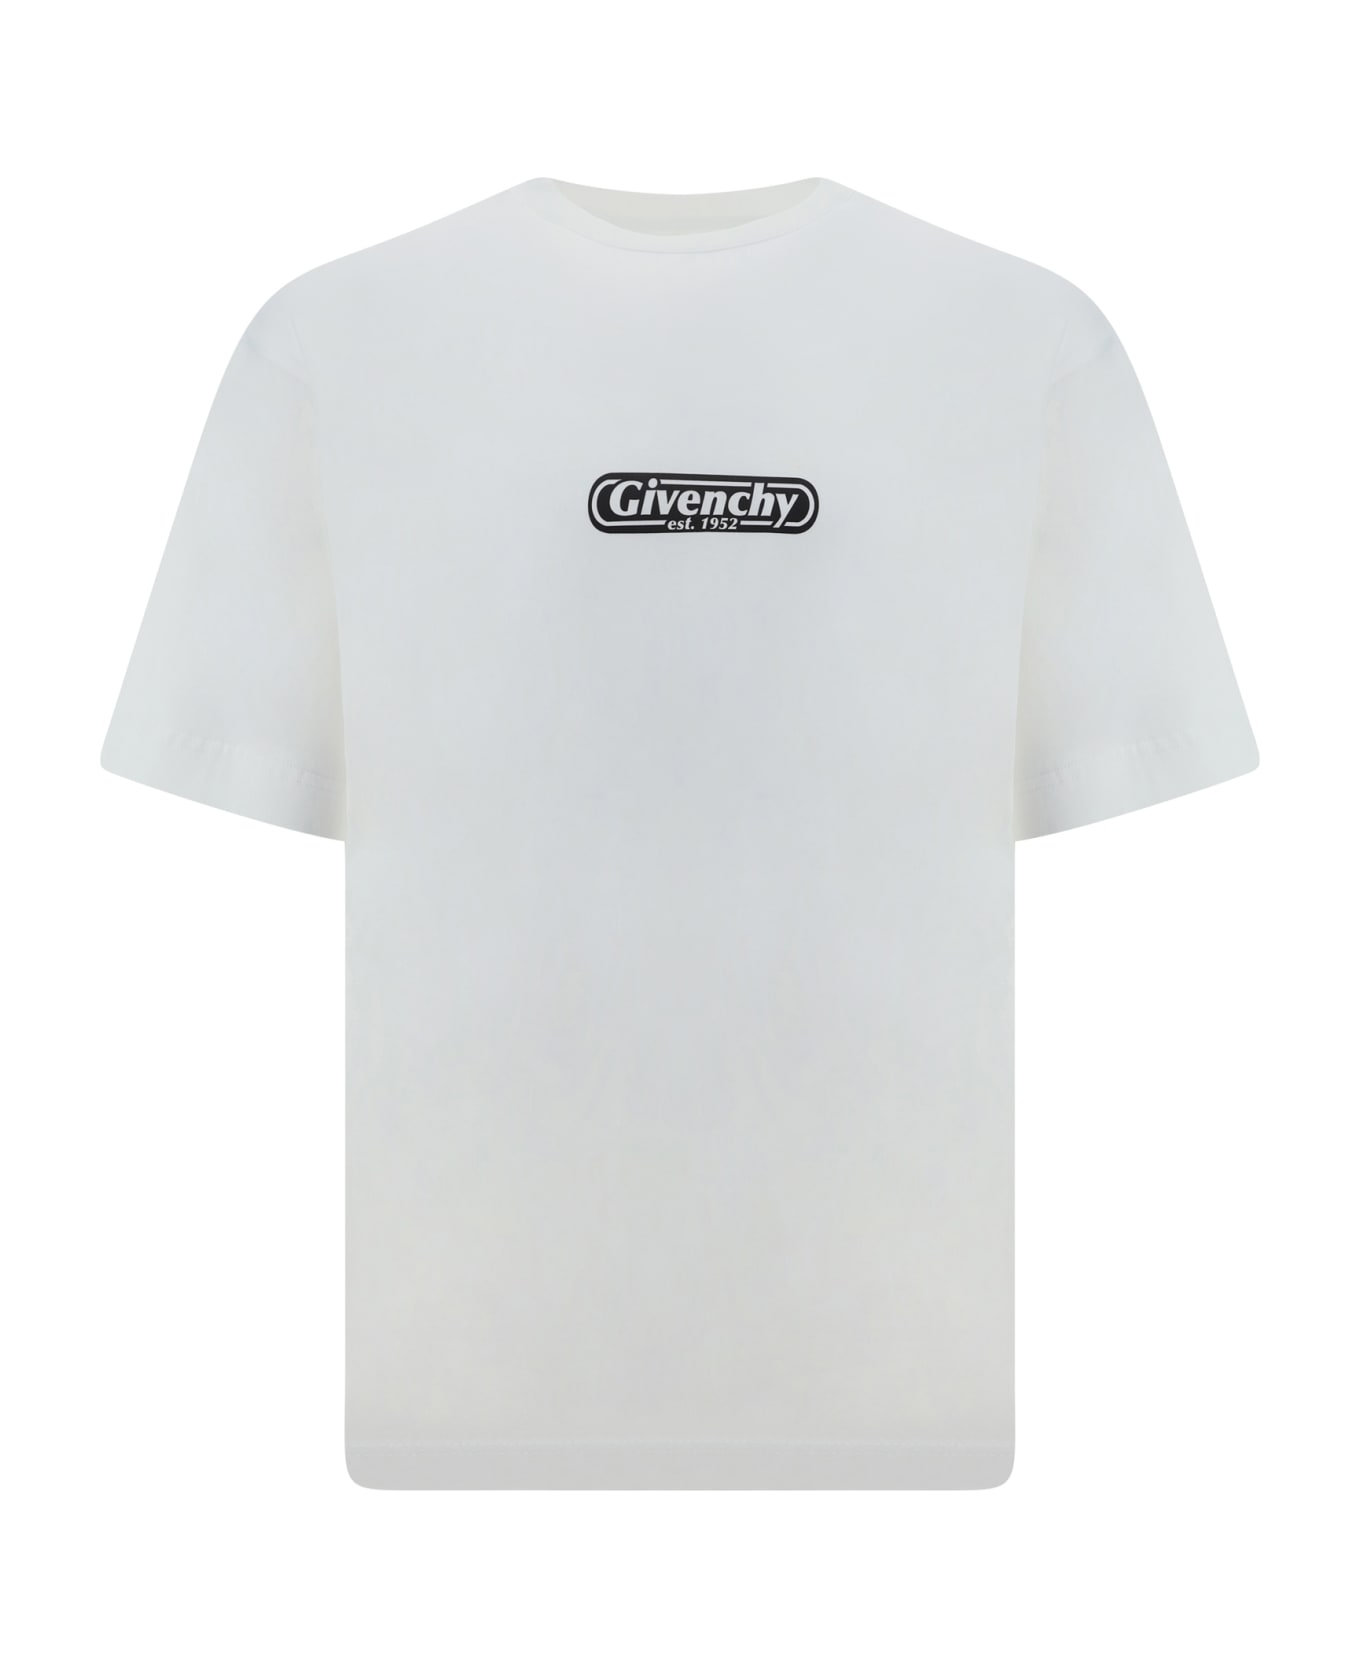 Givenchy Logo 1952 Printed Crewneck T-shirt - White シャツ